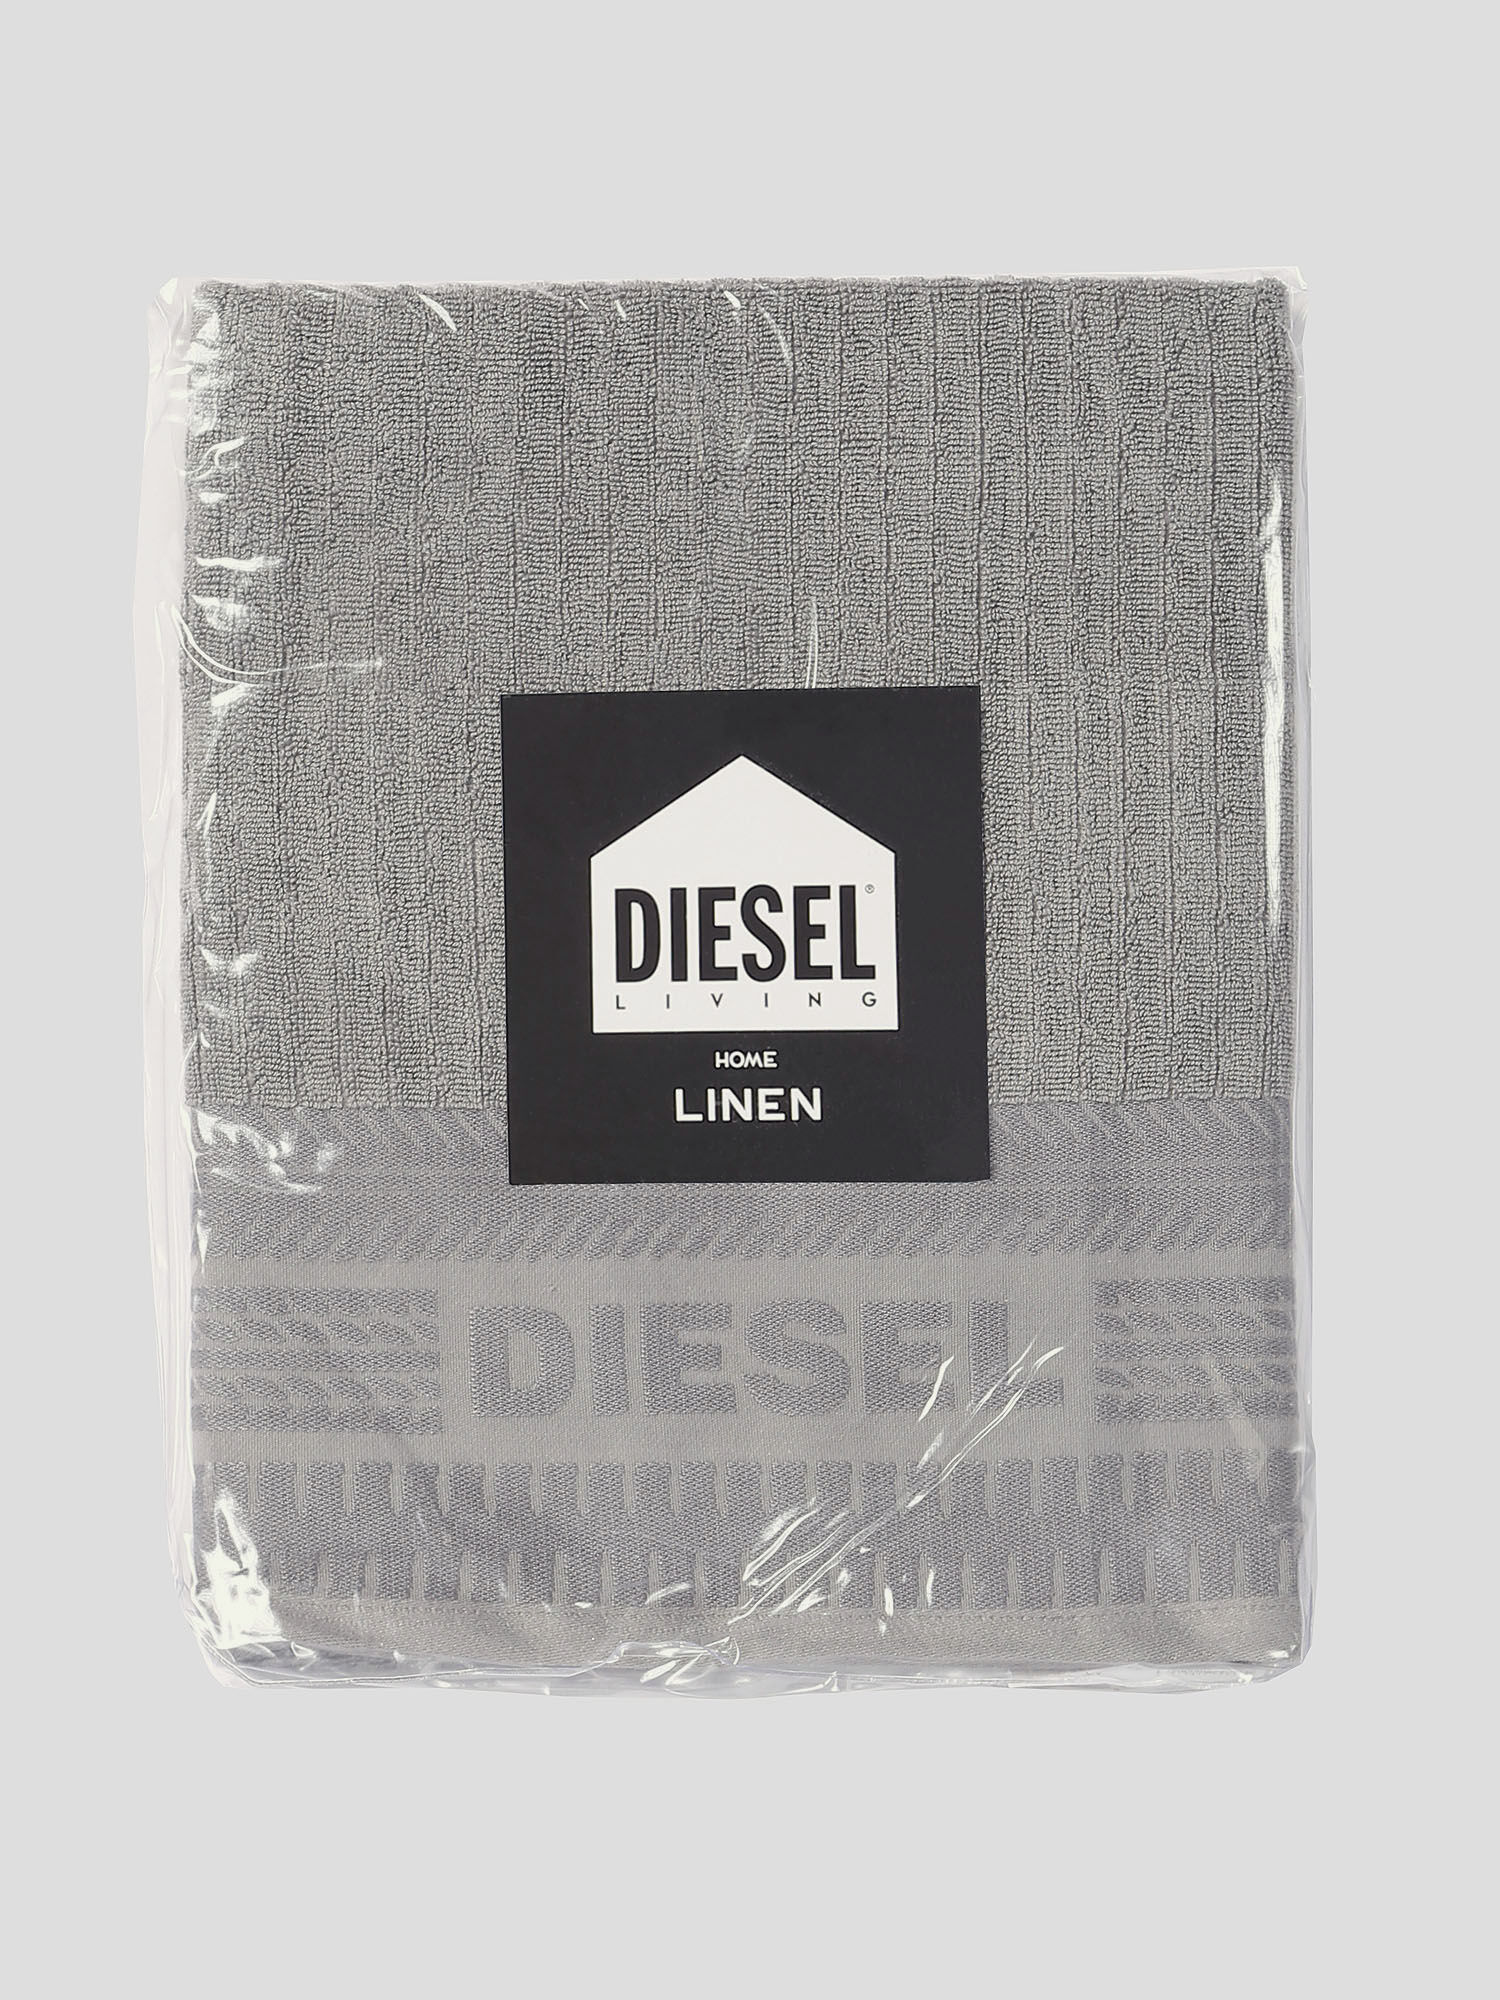 Diesel - 72326 SOLID, Grey - Image 2